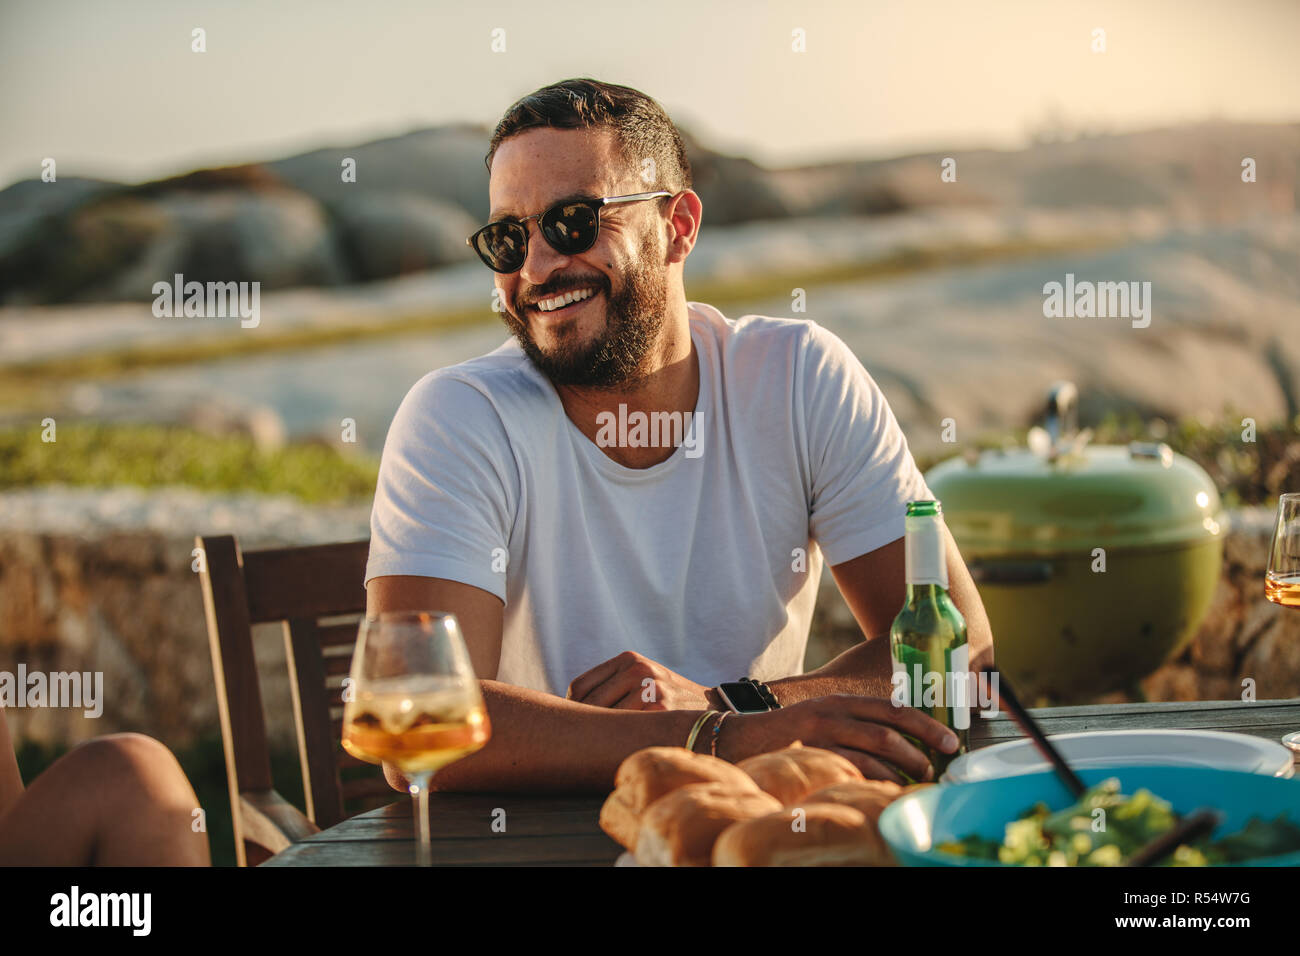 Close up of a smiling man in sunglasses assis à une table avec de la nourriture et des boissons. Homme sur une maison de vacances dans un emplacement à la campagne s'amusant avec des amis ea Banque D'Images